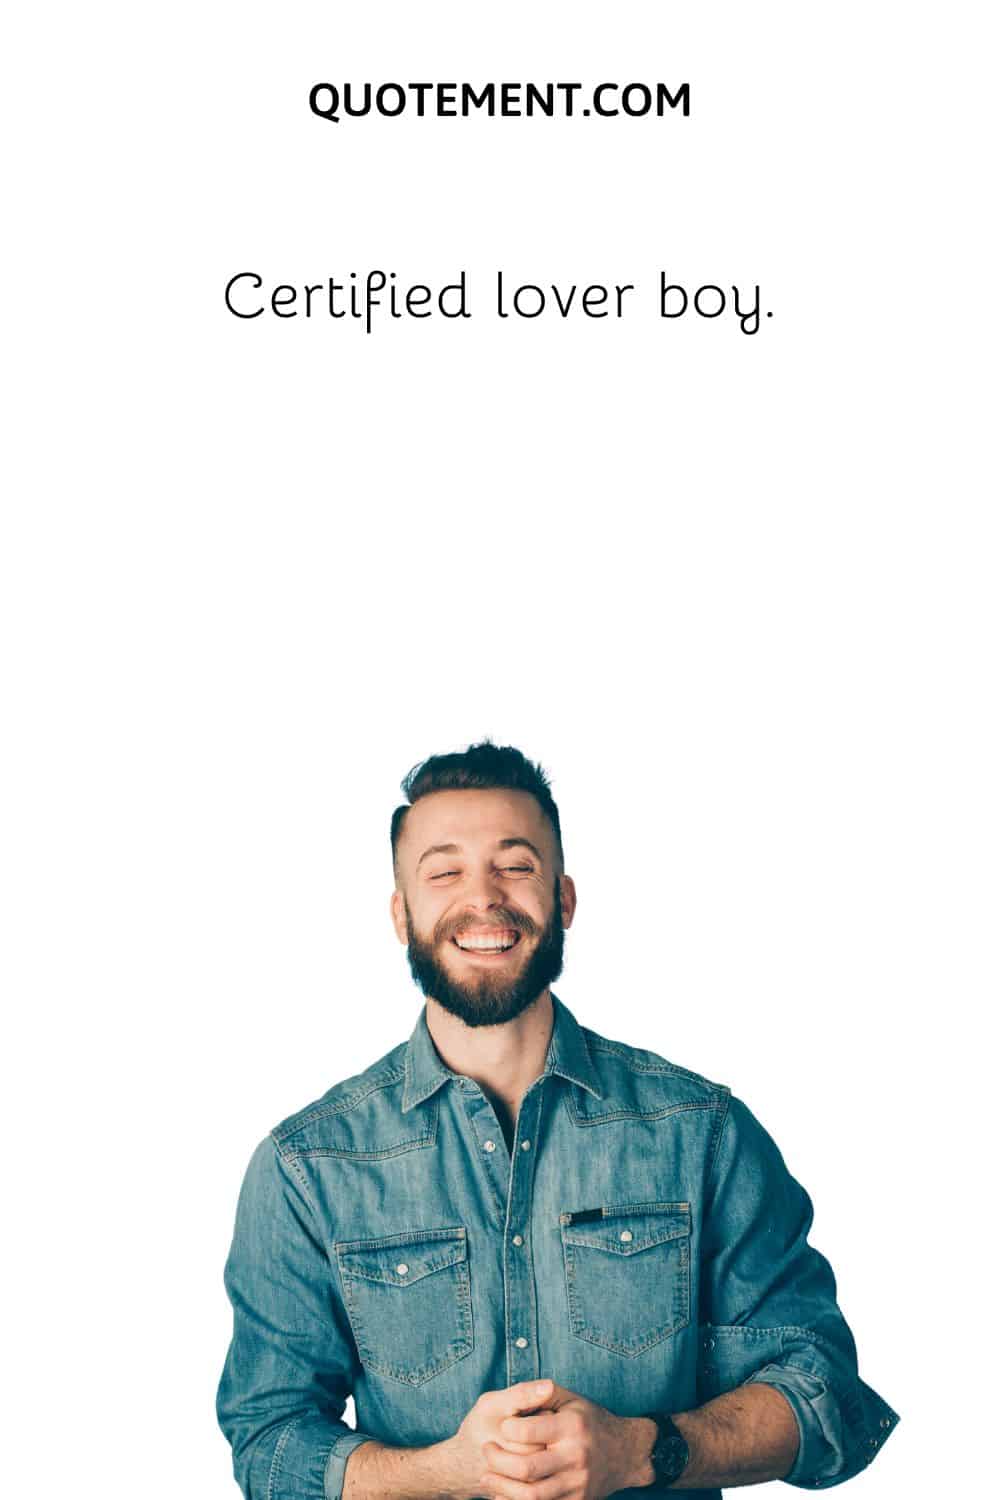 Certified lover boy.